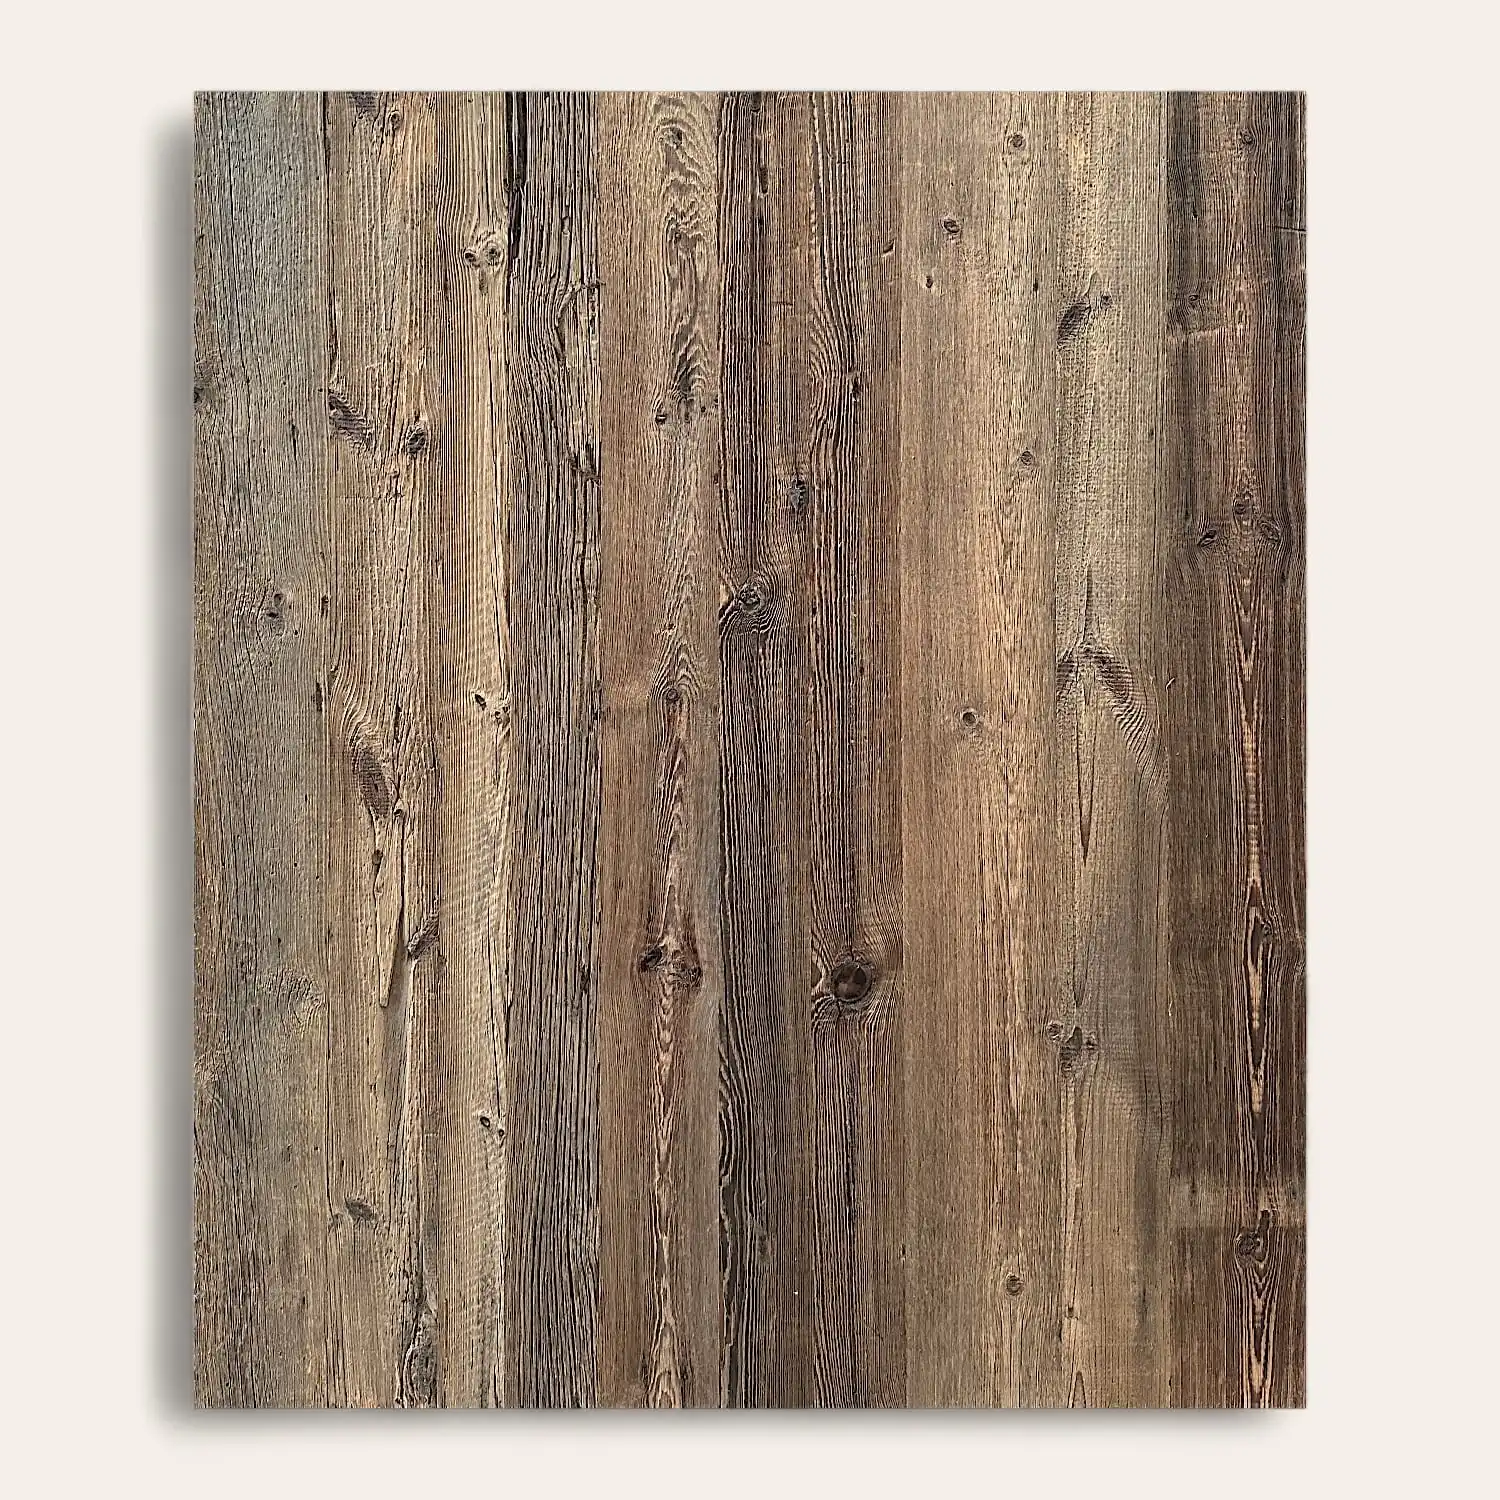  Planches de bois patinées avec grain et nœuds visibles, disposées verticalement en panneau 3 plis. 